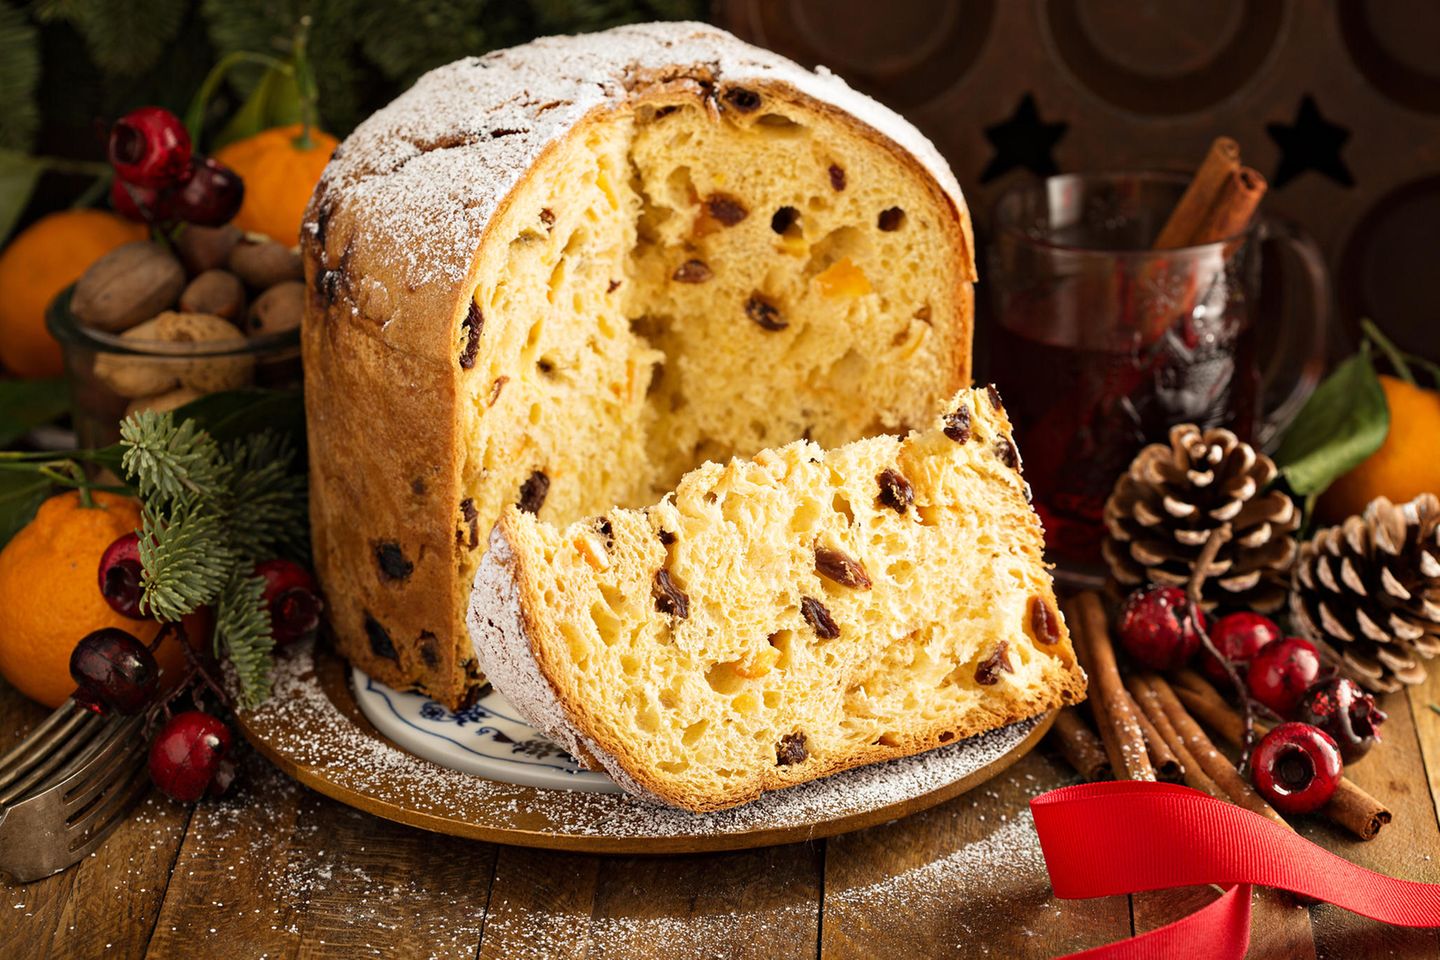 Internationale Weihnachtsrezepte: Panettone-Kuchen auf einem Teller